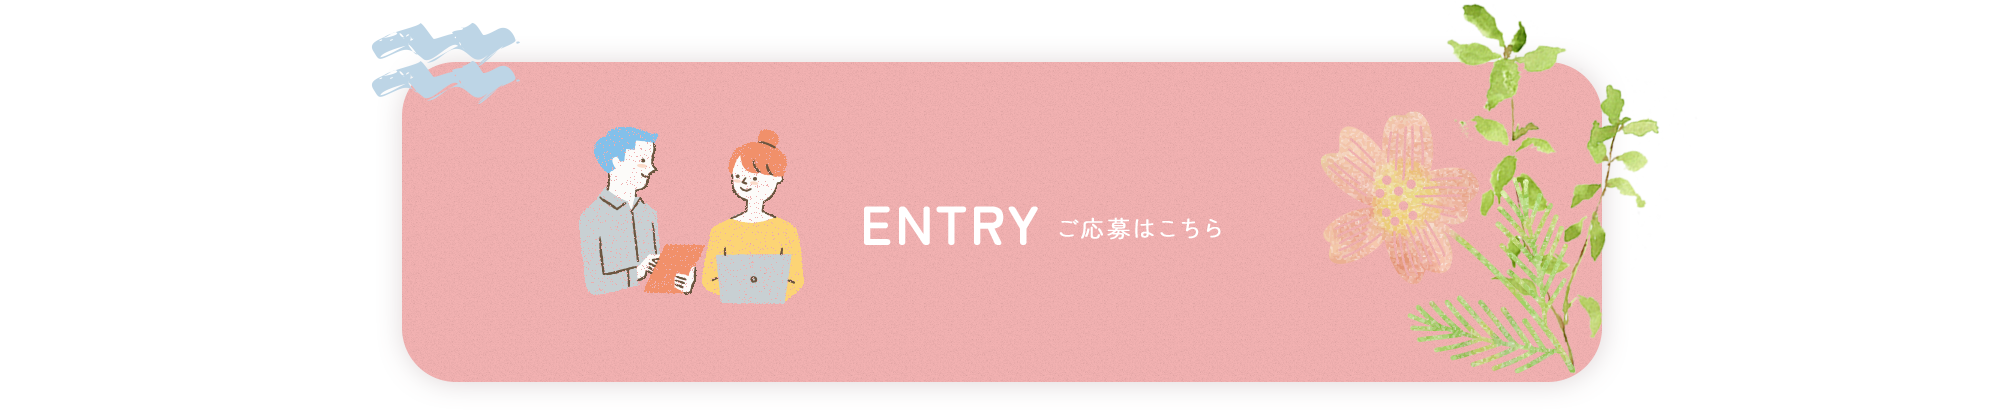 _lp01_bnr_entry